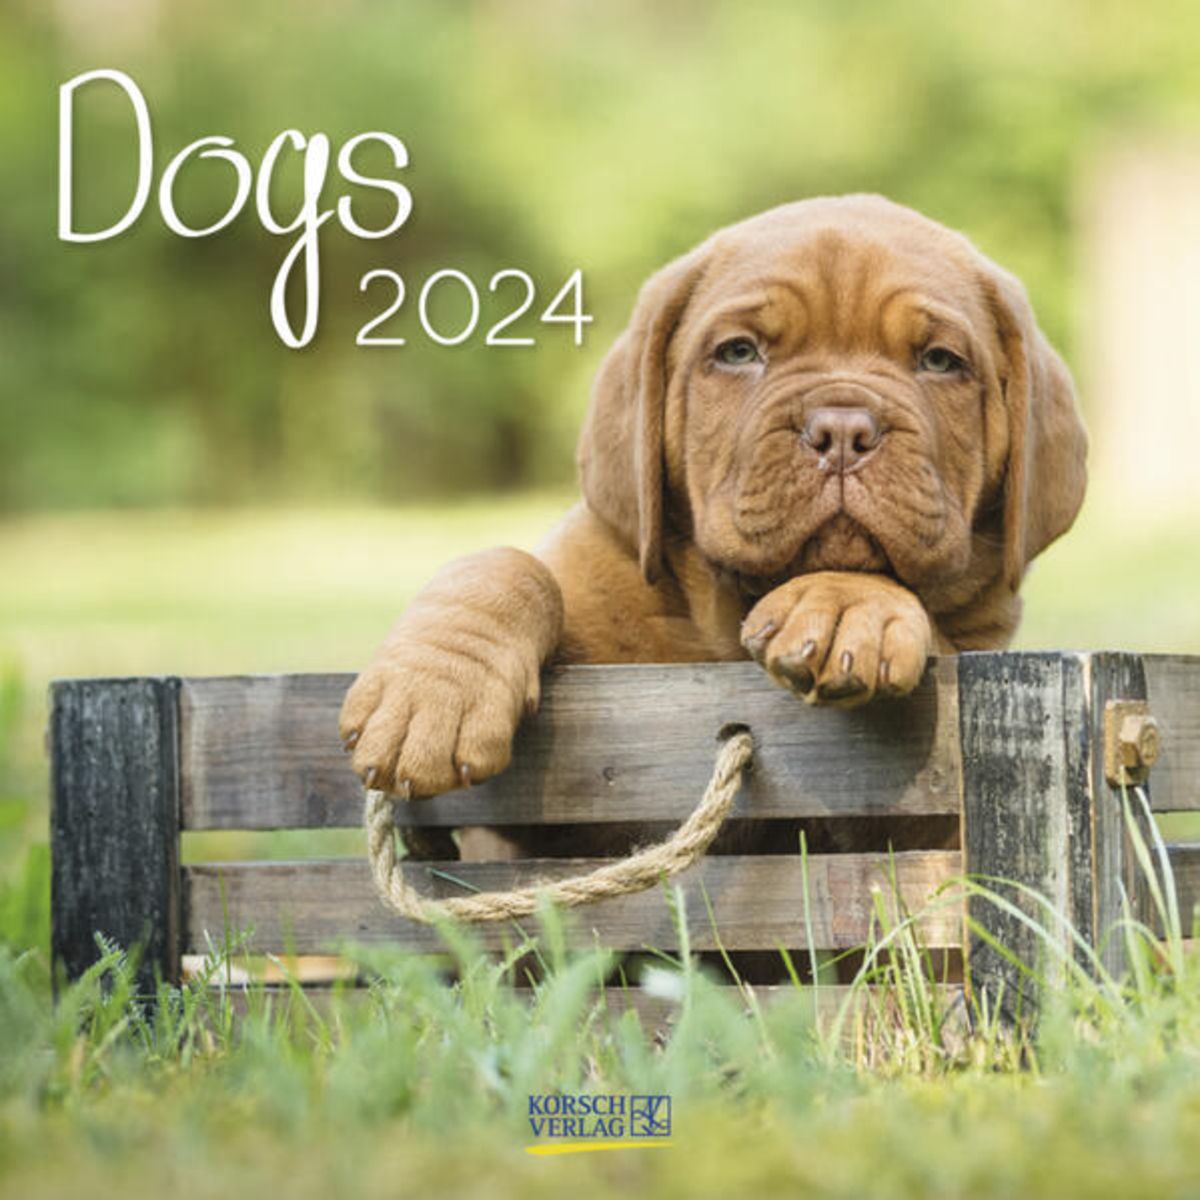 'Dogs 2024' 'Korsch